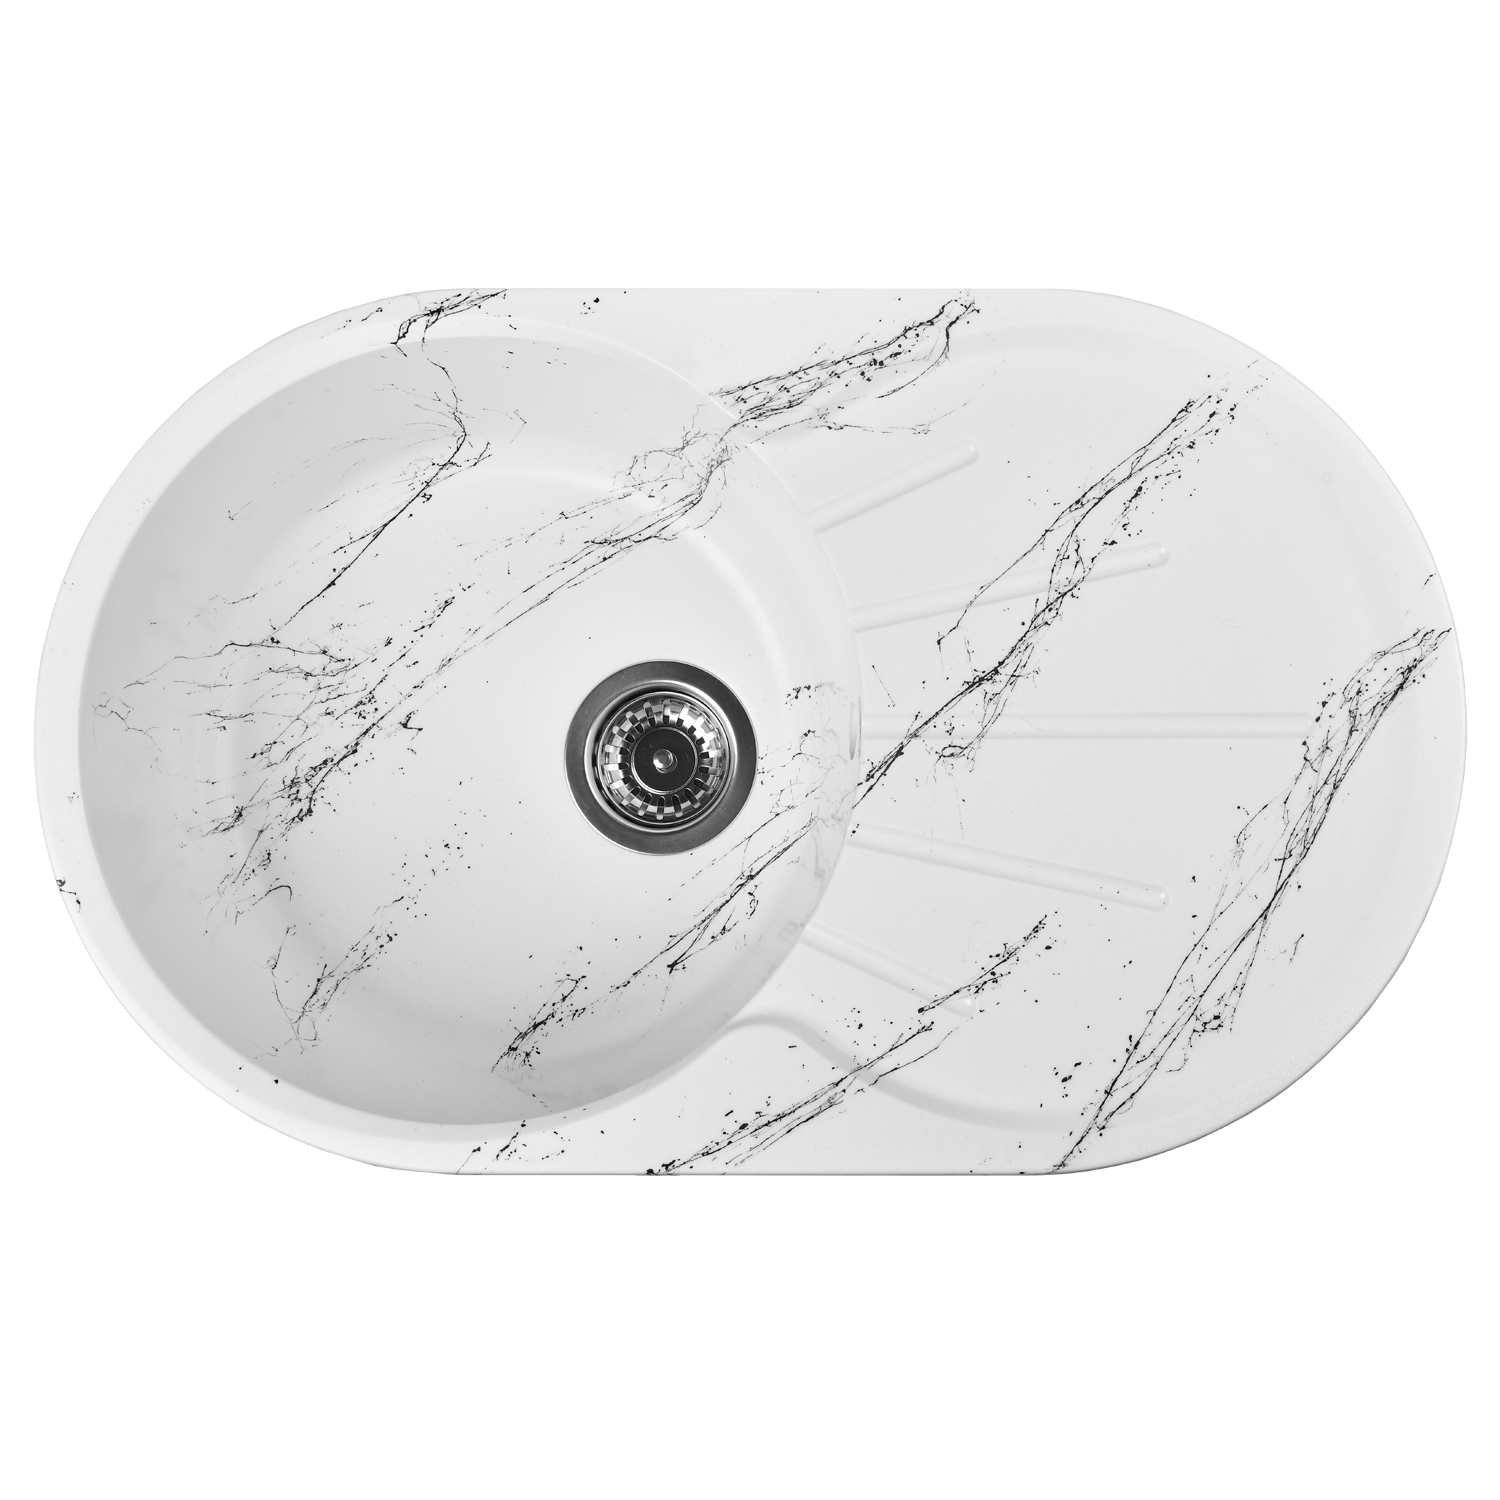 Мойка из искусственного камня для кухни WISENT WA02-12 мрамор бело-черный